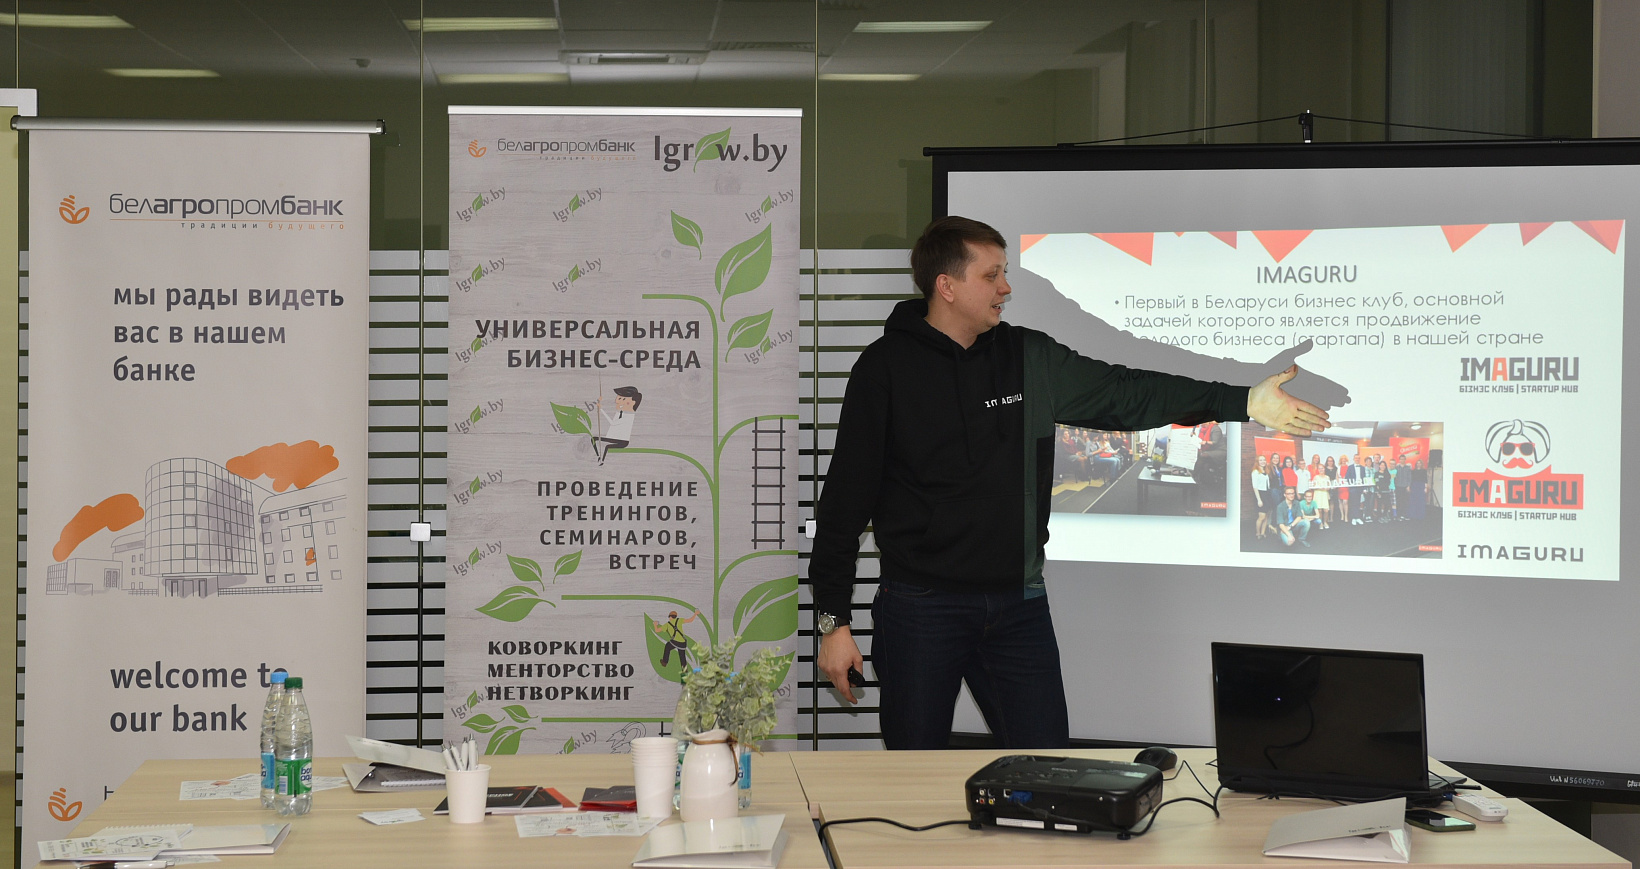 Евгений Пугач, директор Imaguru Startup Hub